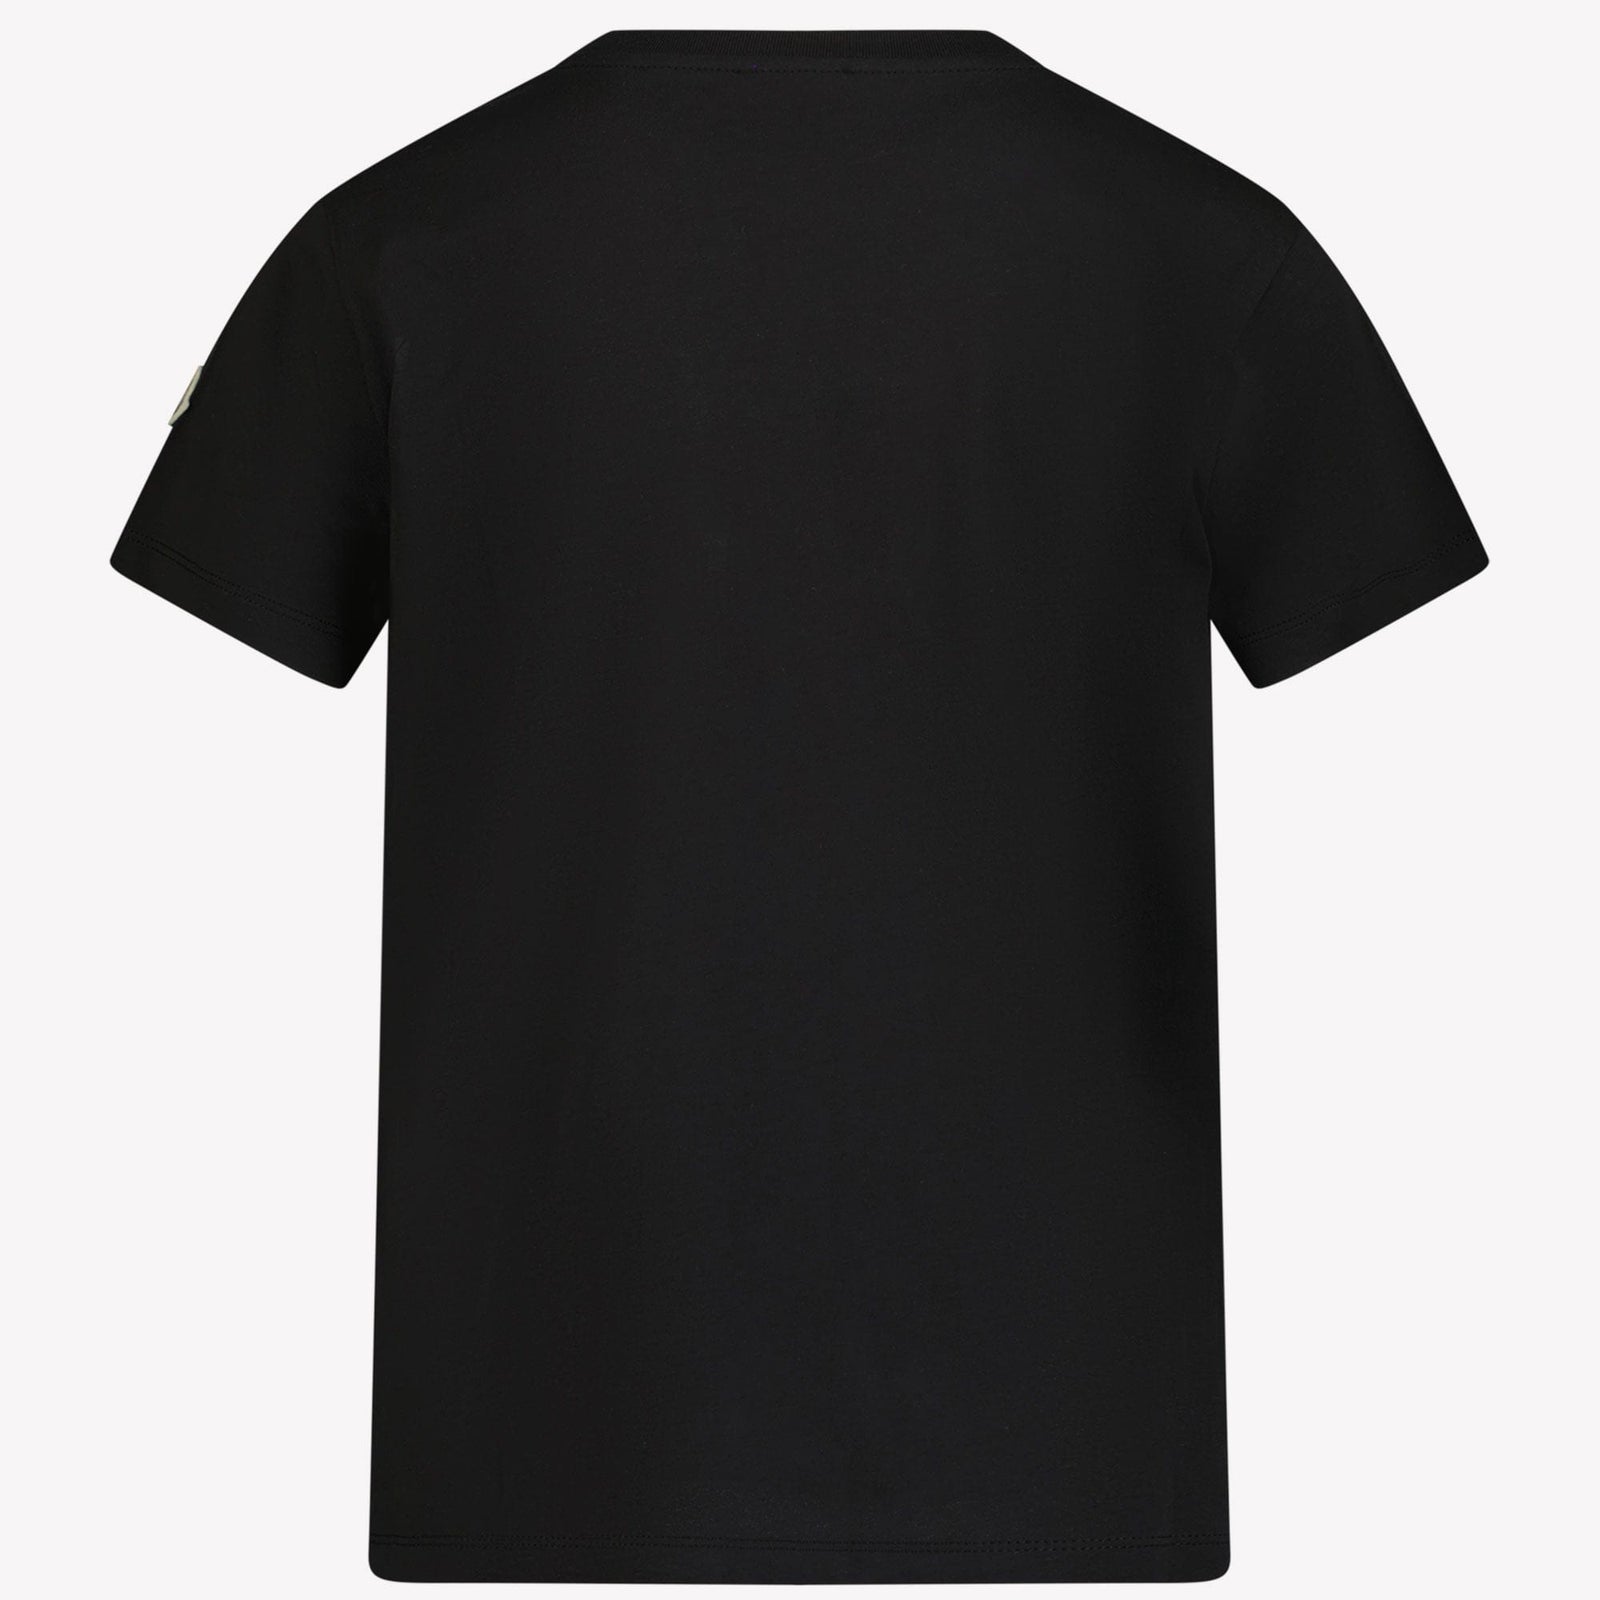 Moncler Kinder Jongens T-Shirt Zwart 4Y